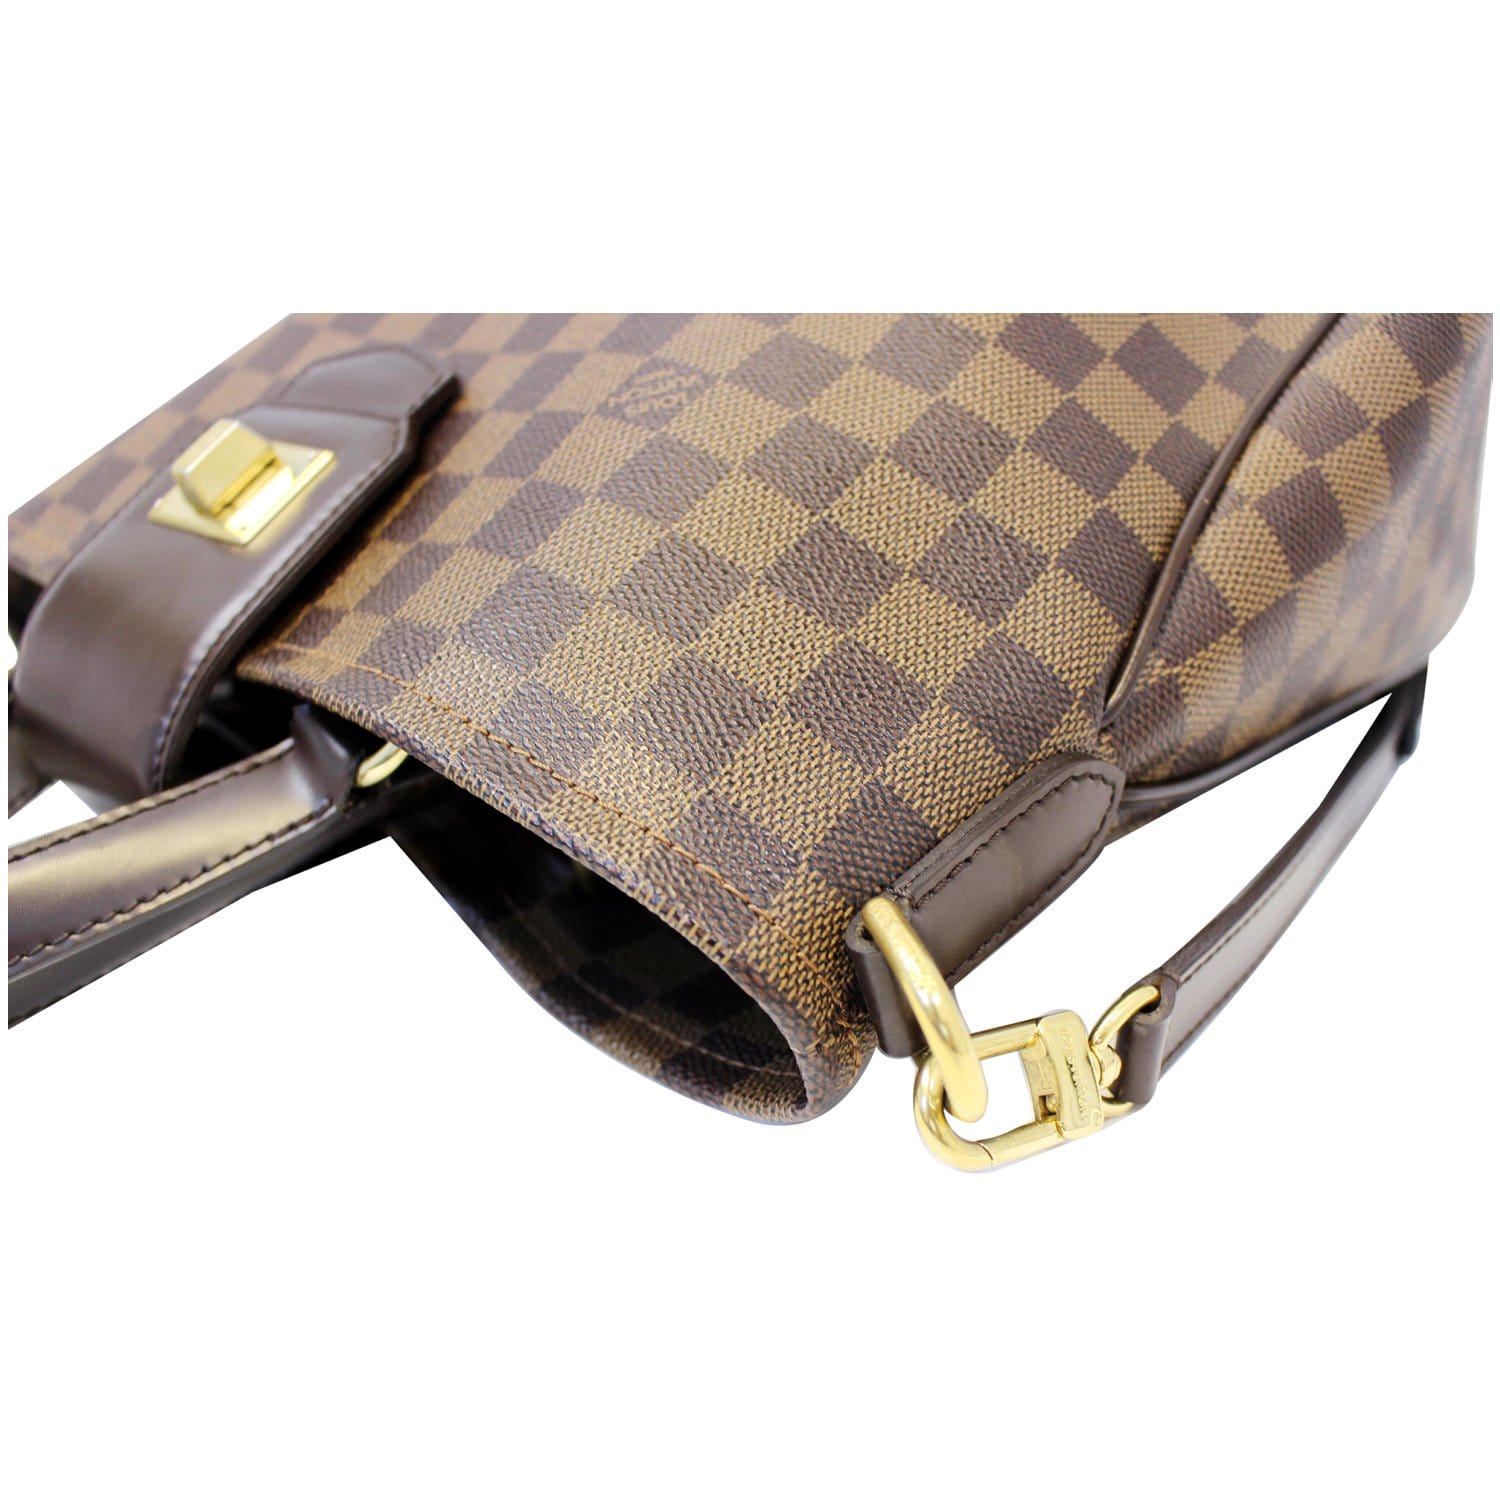 Authentic Louis Vuitton Besace Roseberry Damier Ebene N41178 Shoulder Bag  LD554